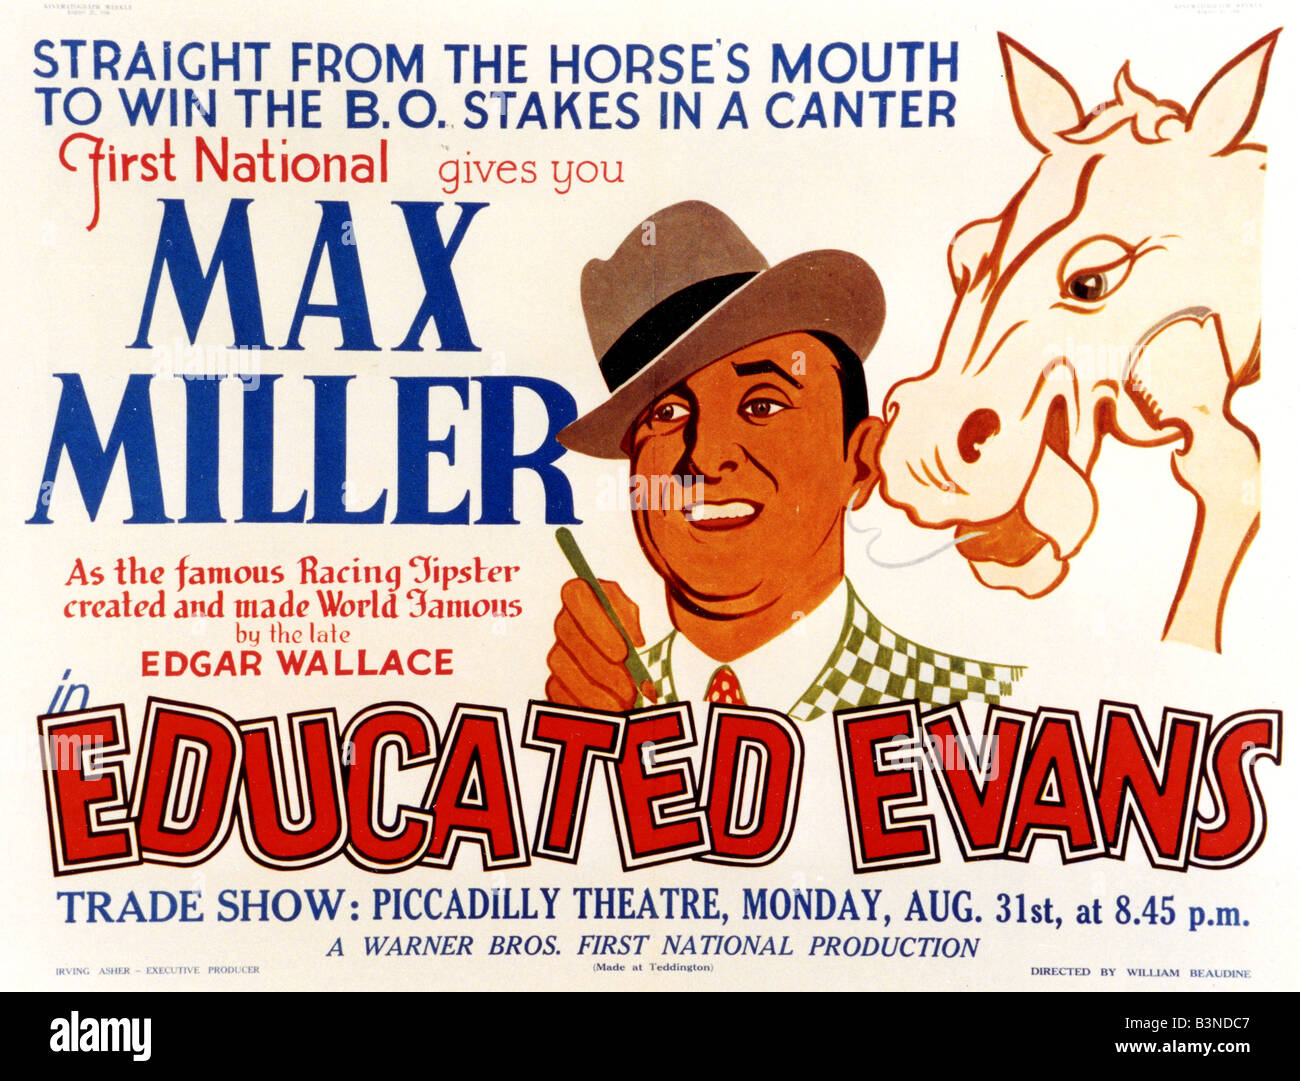 AUSGEBILDETE EVANS Plakat für 1936 film Warners mit dem britischen Komiker Max Miller Stockfoto